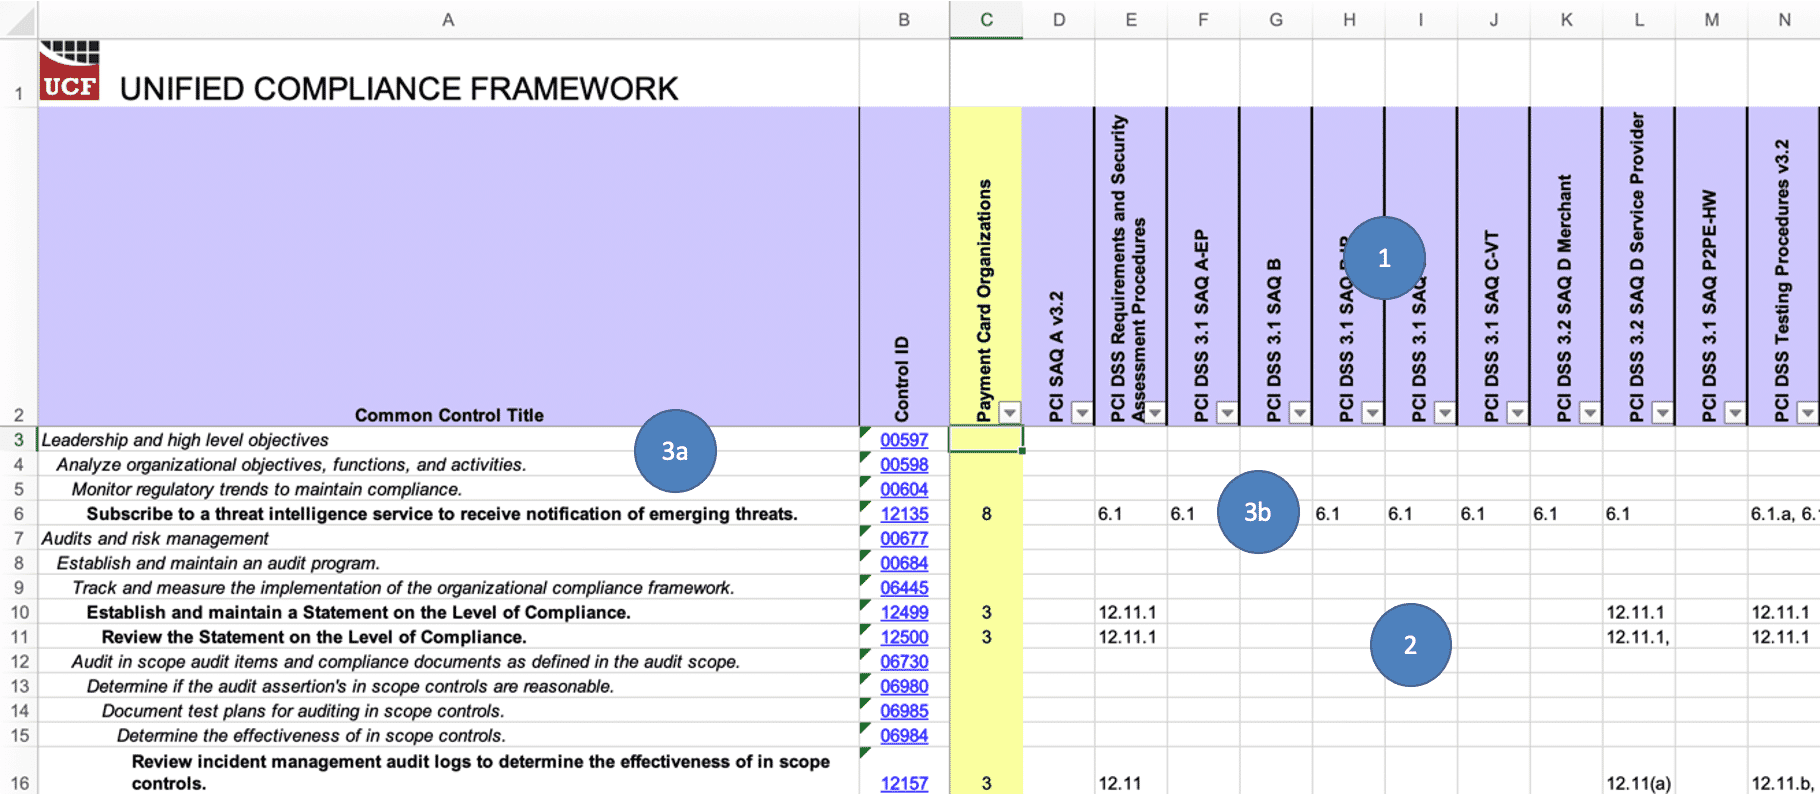 Framework-as-spreadsheet